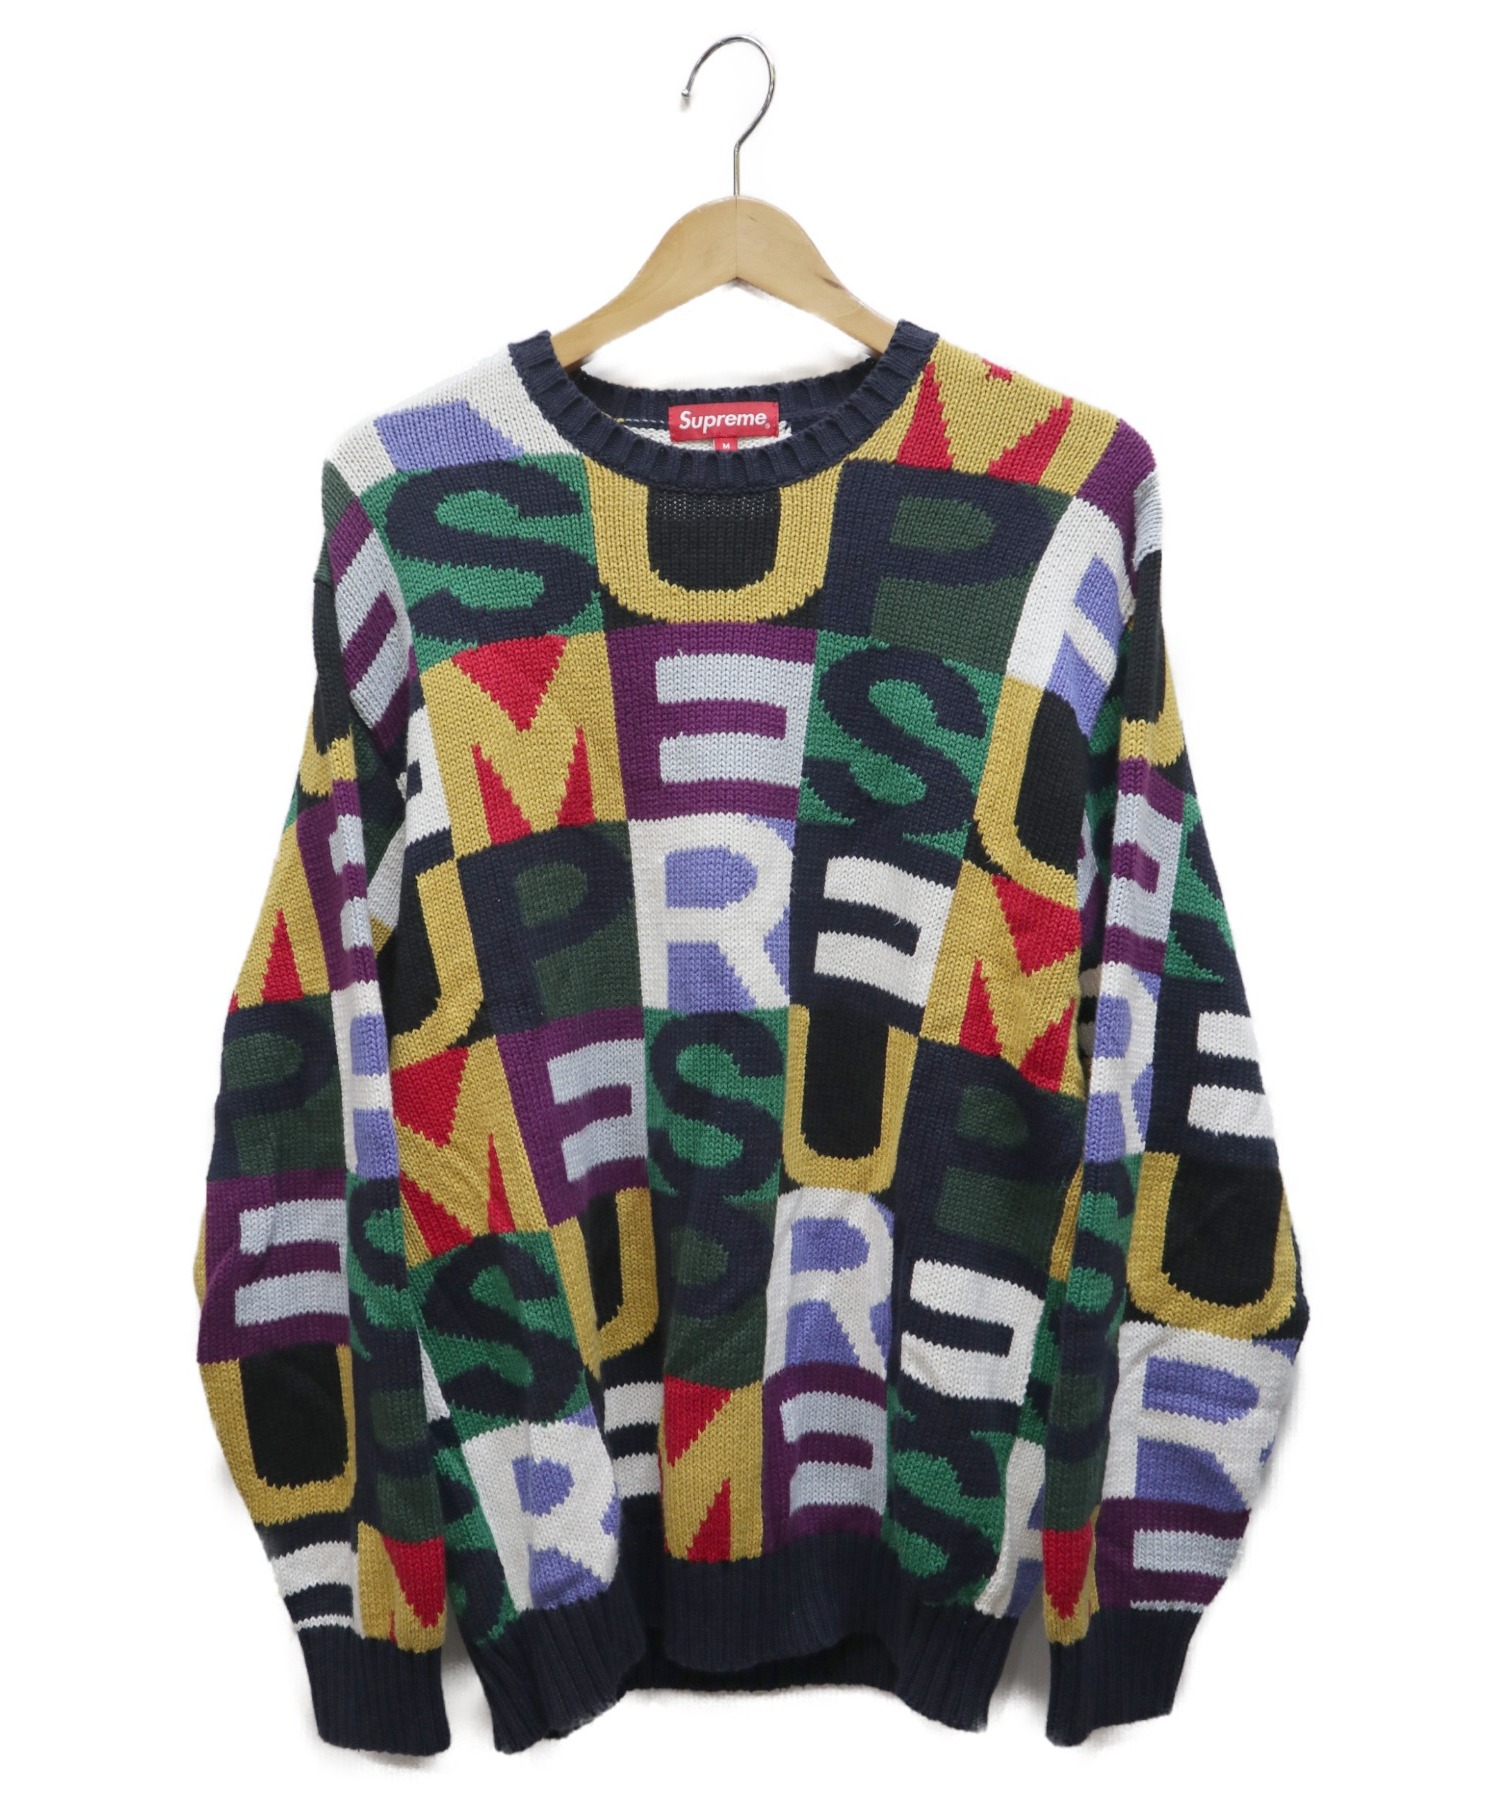 Supreme Big Letters Sweater Mサイズ www.krzysztofbialy.com